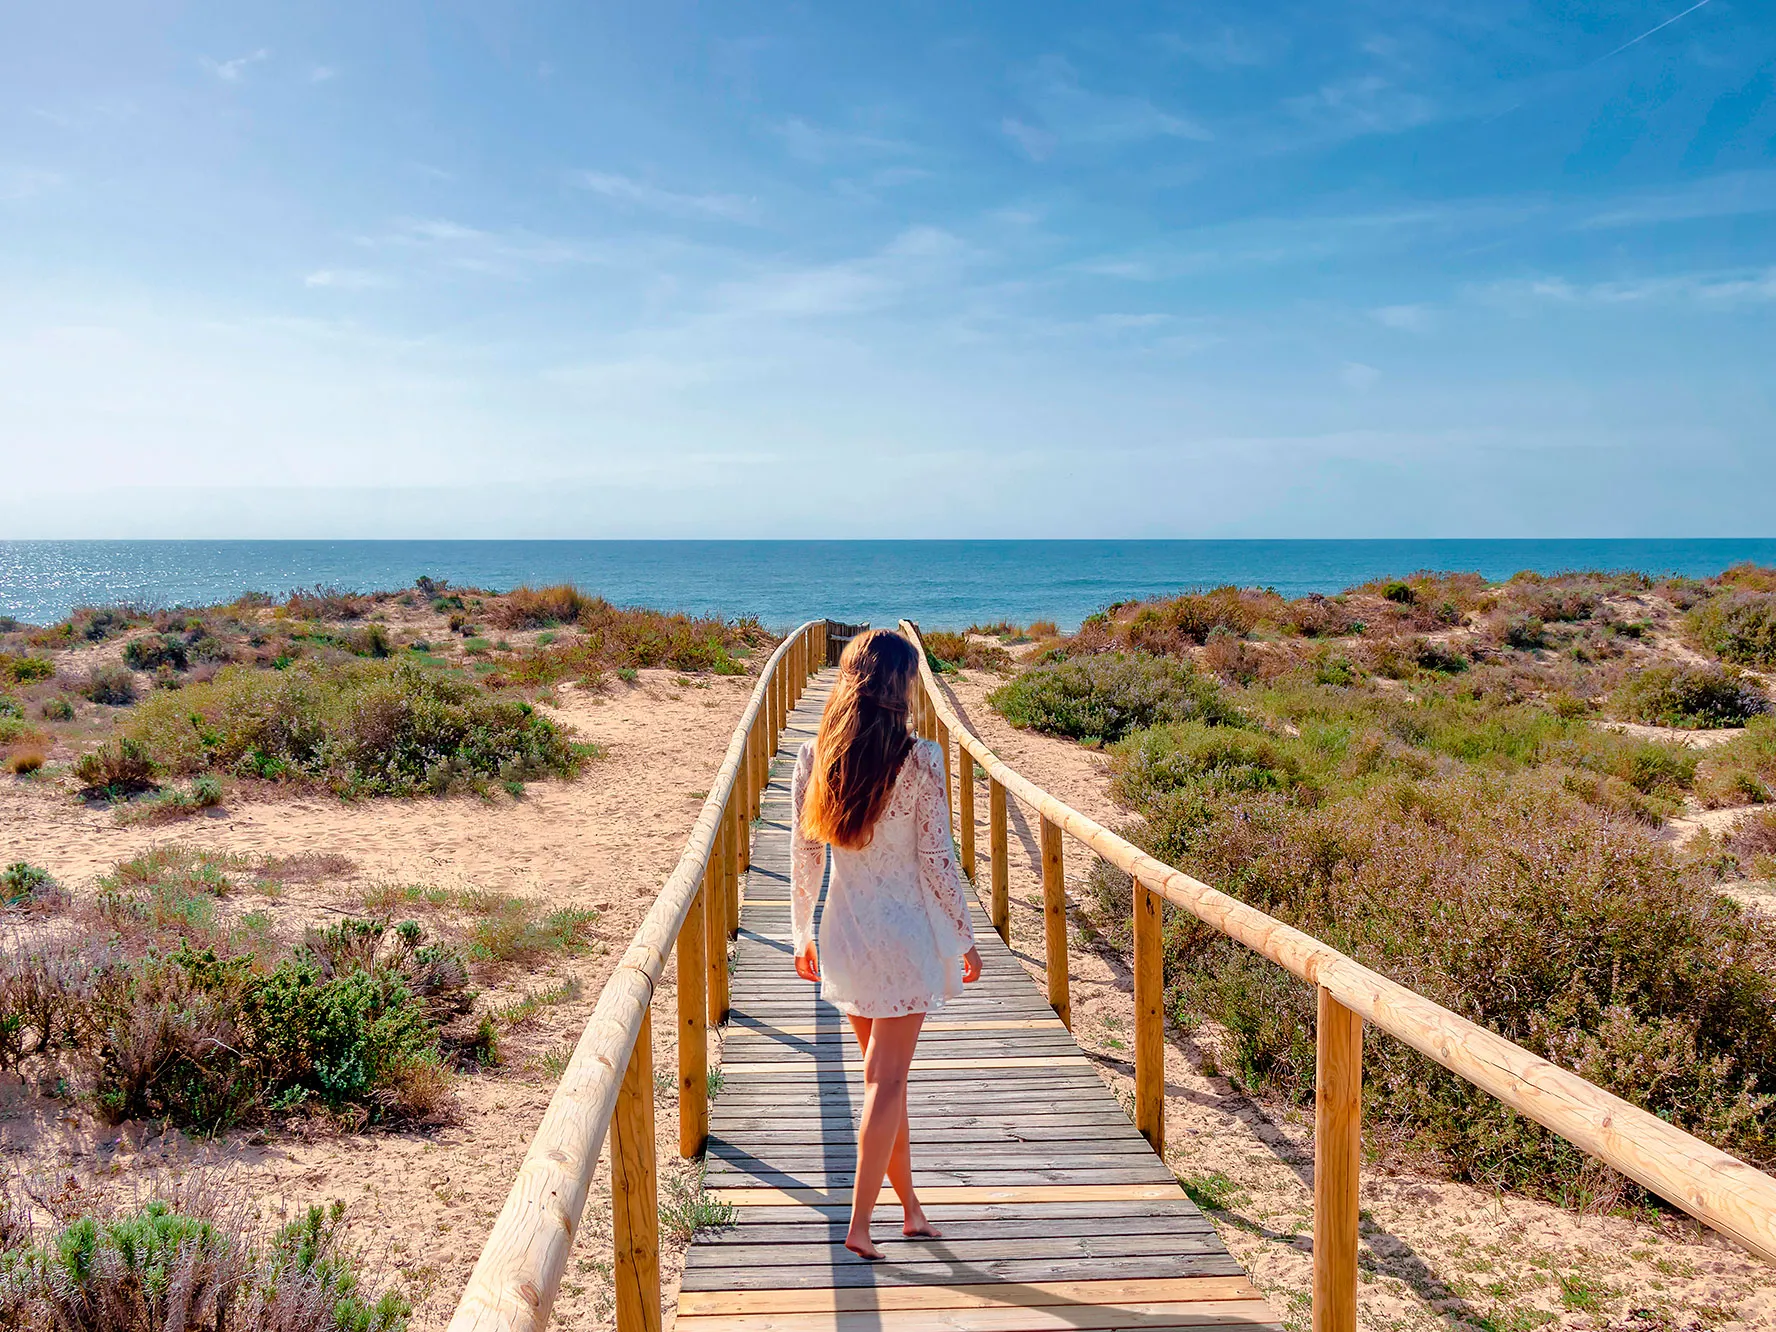 ¡3 días y 2 noches en Punta Umbría (Huelva) en primera línea de playa en Hotel 4* + Media Pensión o Pensión completa!